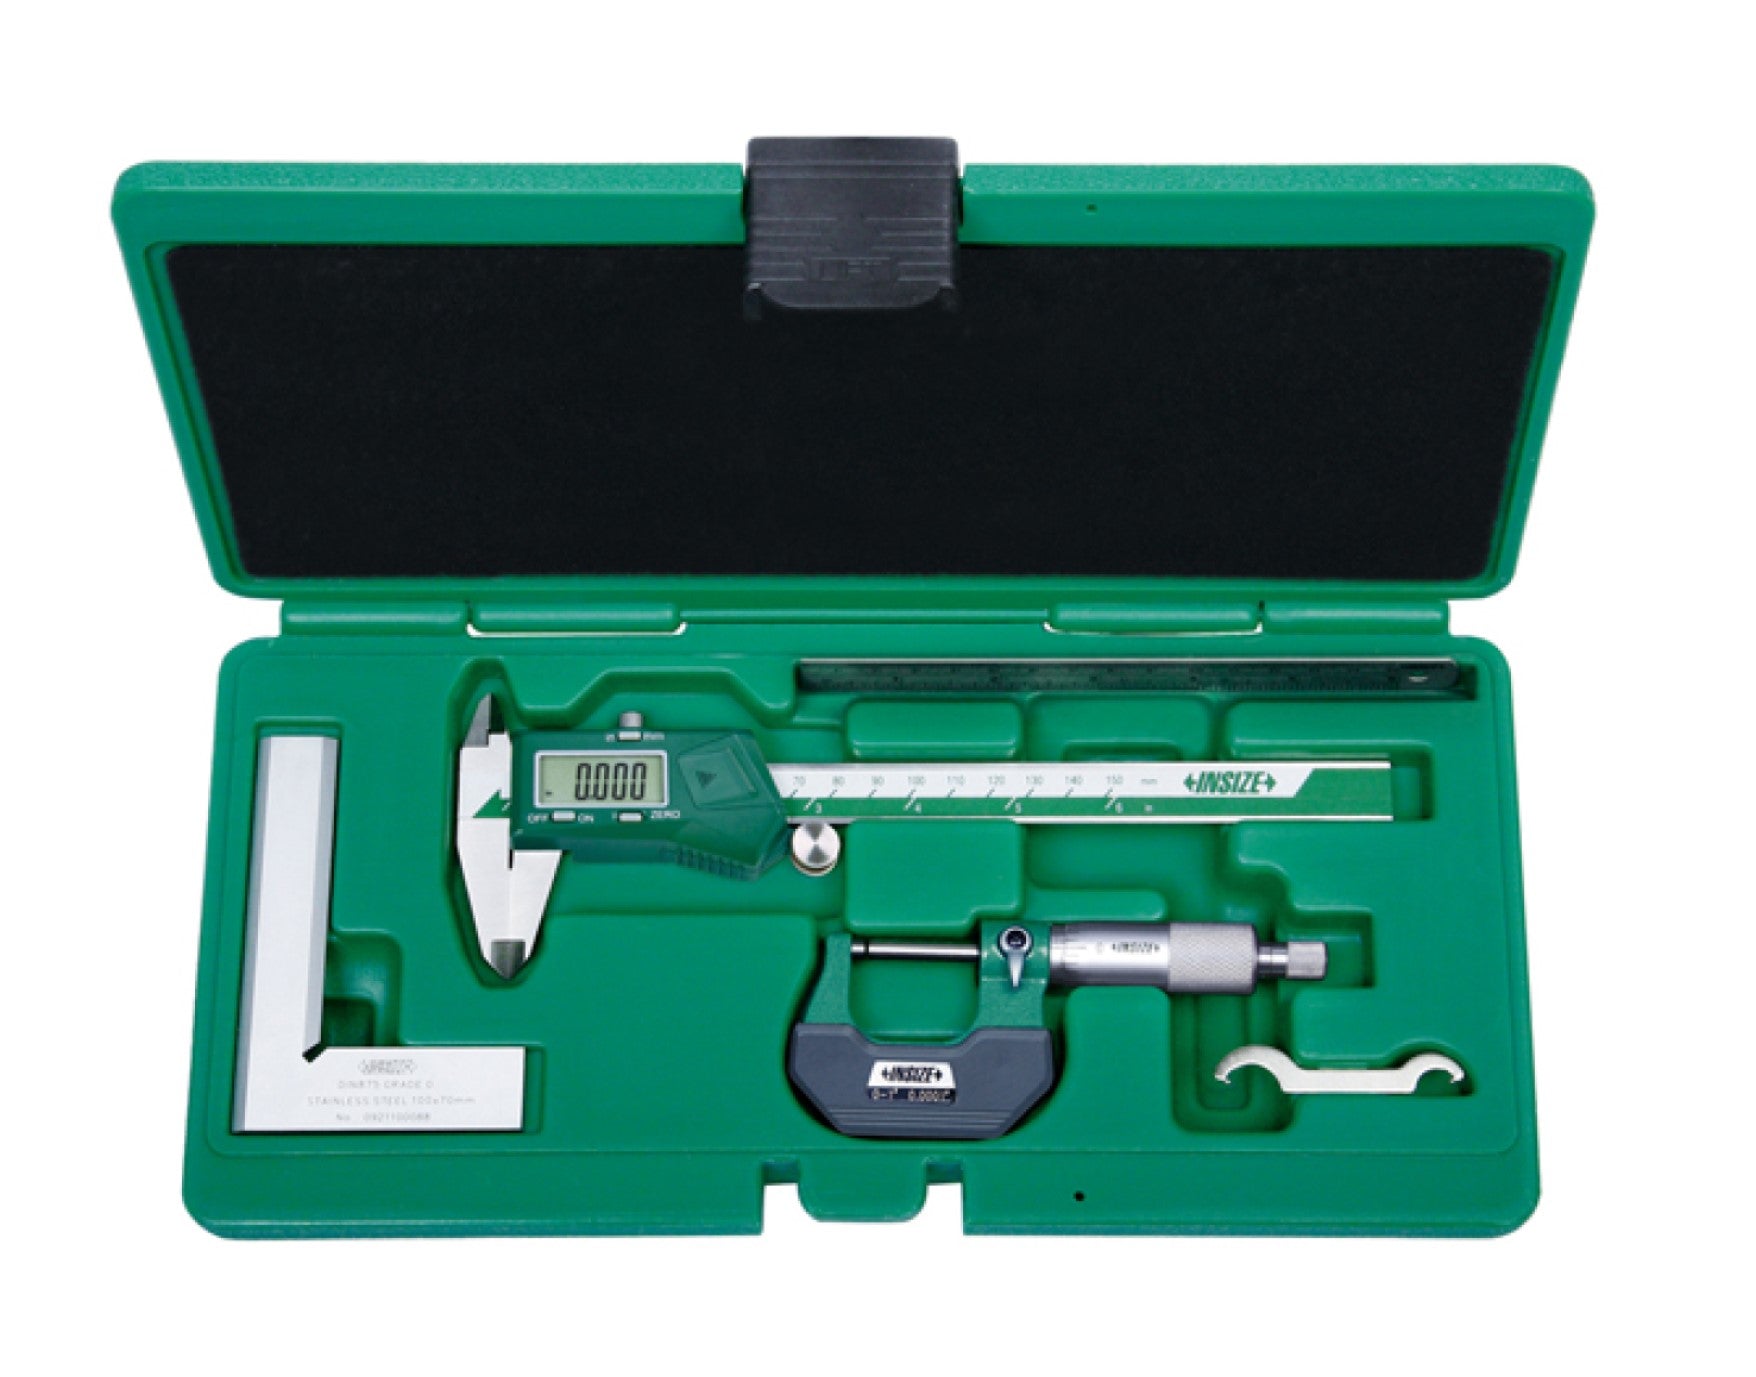 Insize, 5042-E INSIZE Electronic Caliper, Standard Micrometer, 90° Beveled Edge Square Tool Set